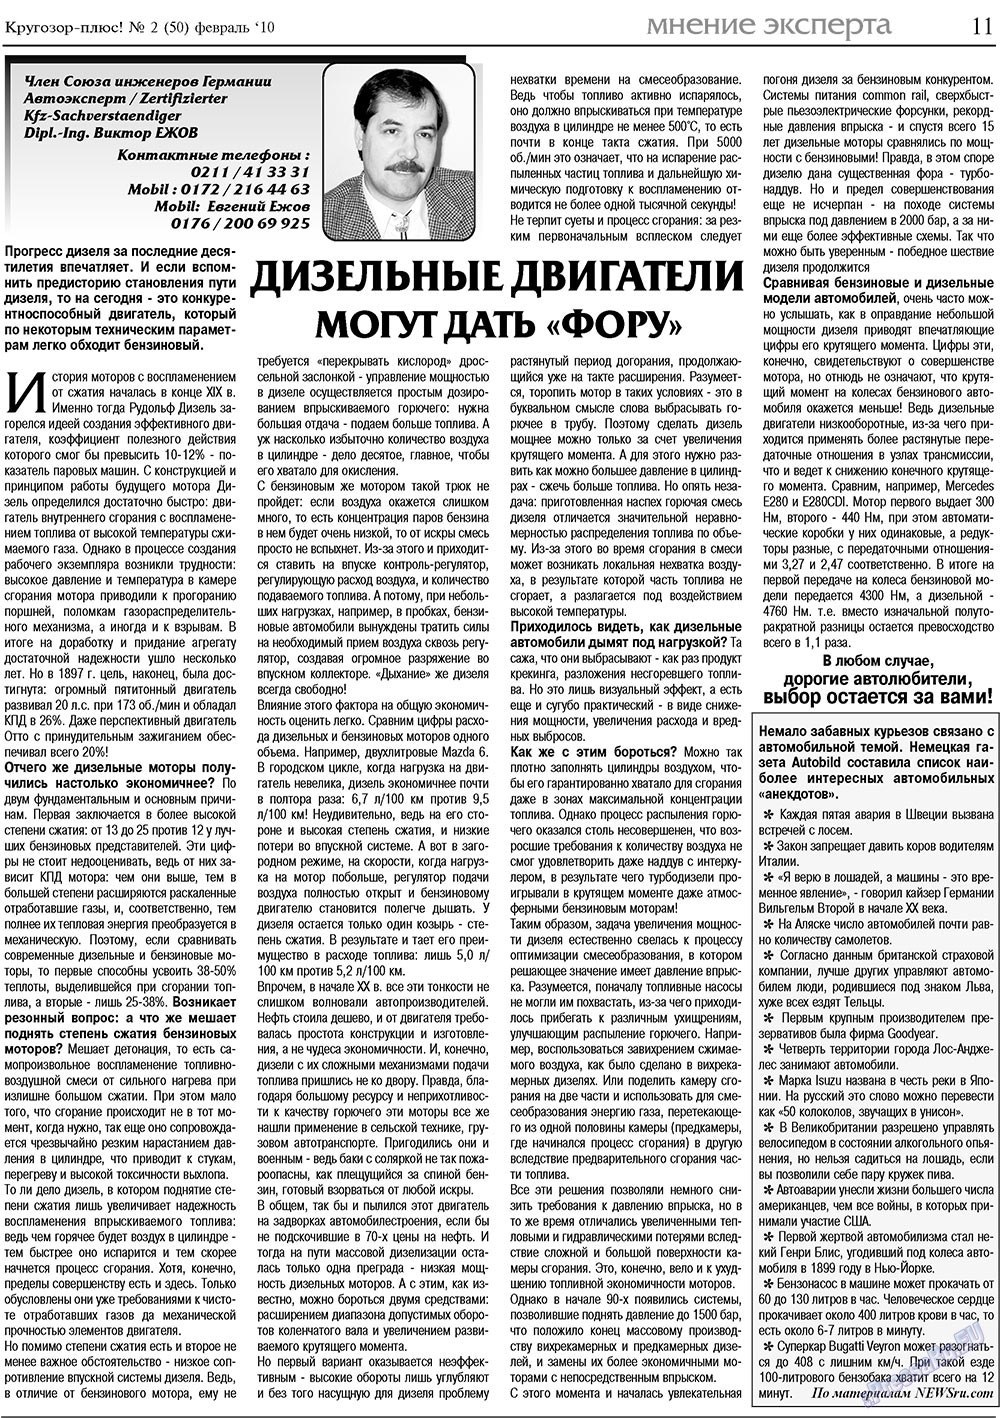 Кругозор плюс!, газета. 2010 №2 стр.11